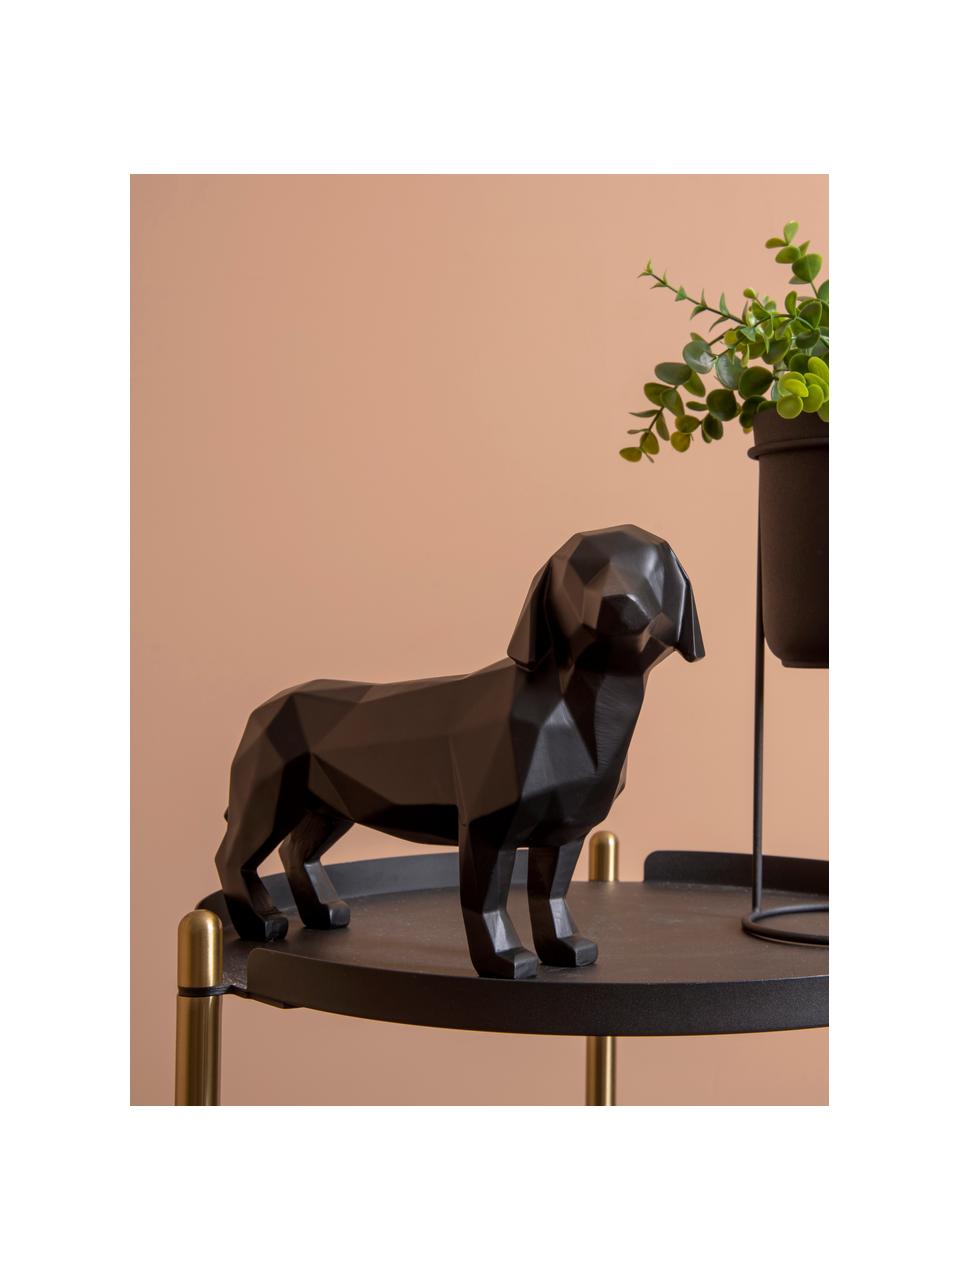 Dekoracja Origami Dog, Tworzywo sztuczne, Czarny, S 30 x W 21 cm